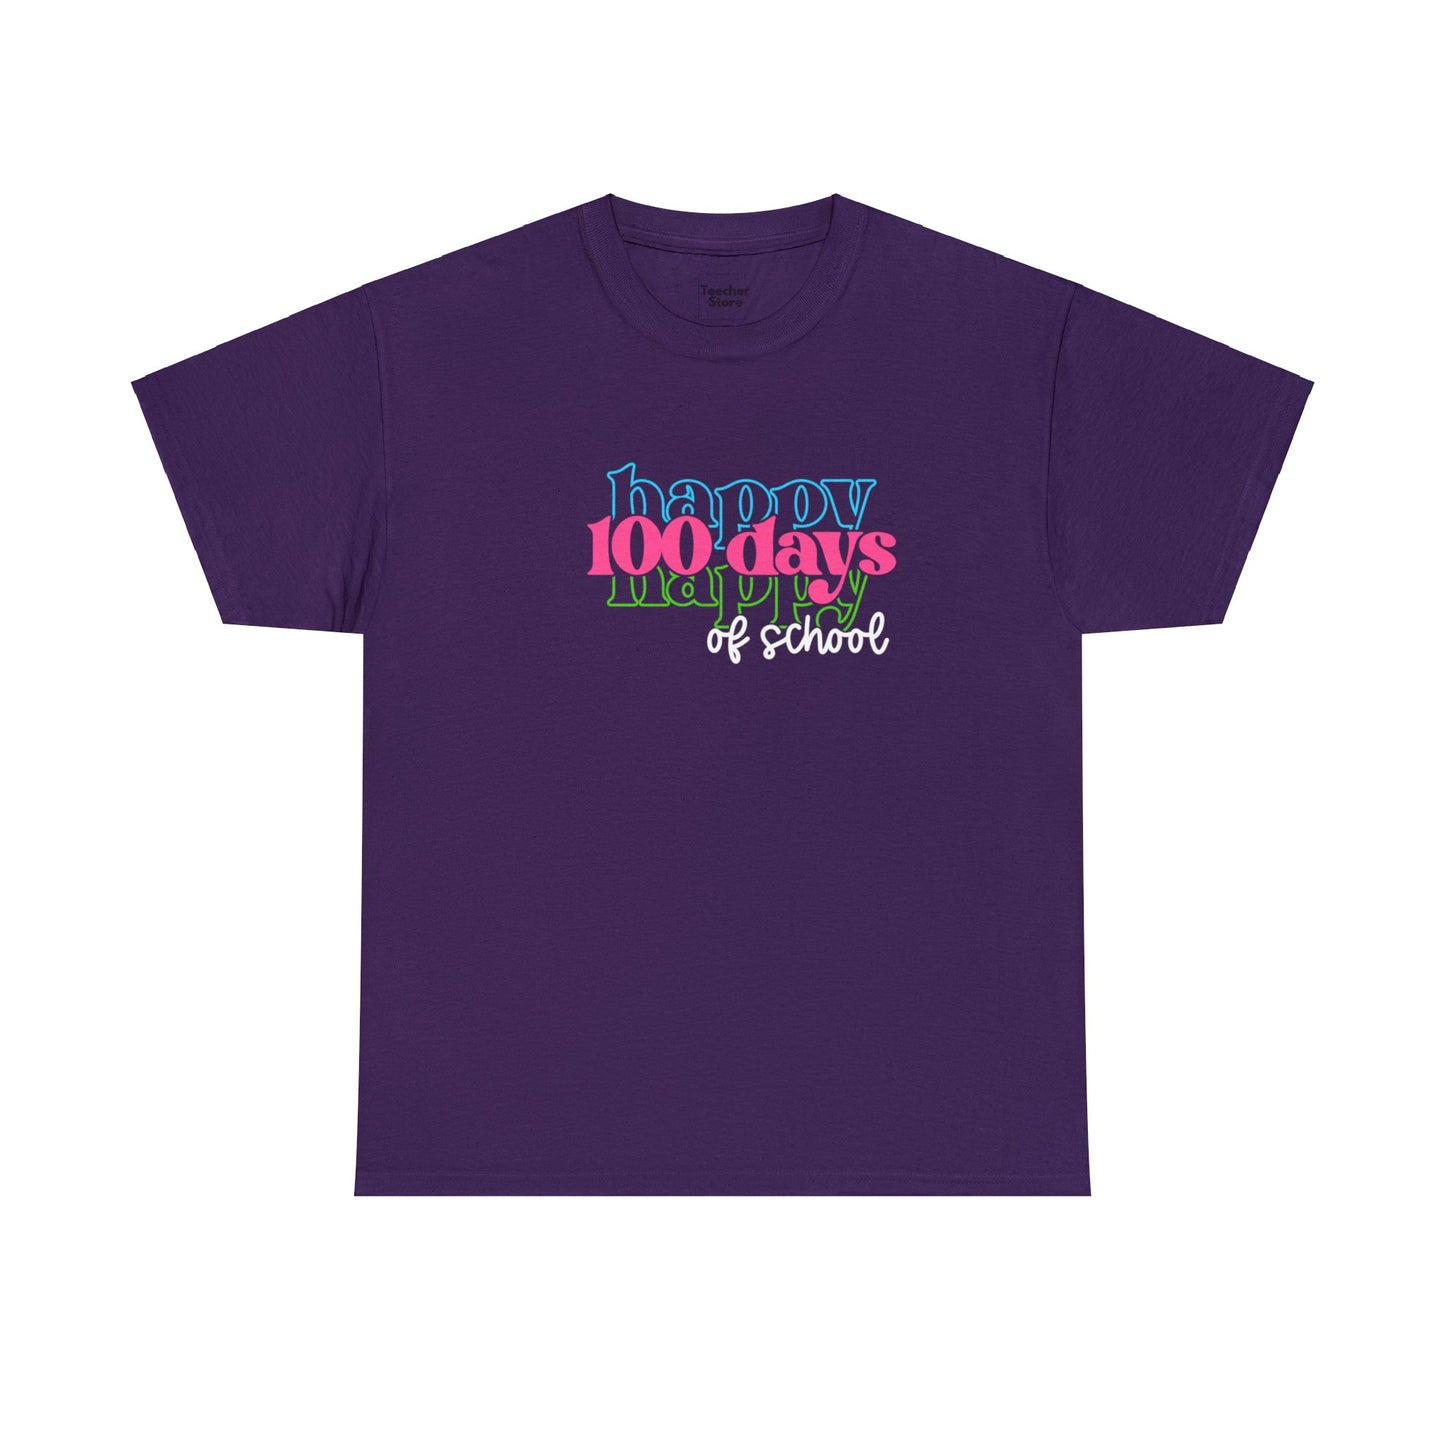 Happy 100 Days Tee-Shirt